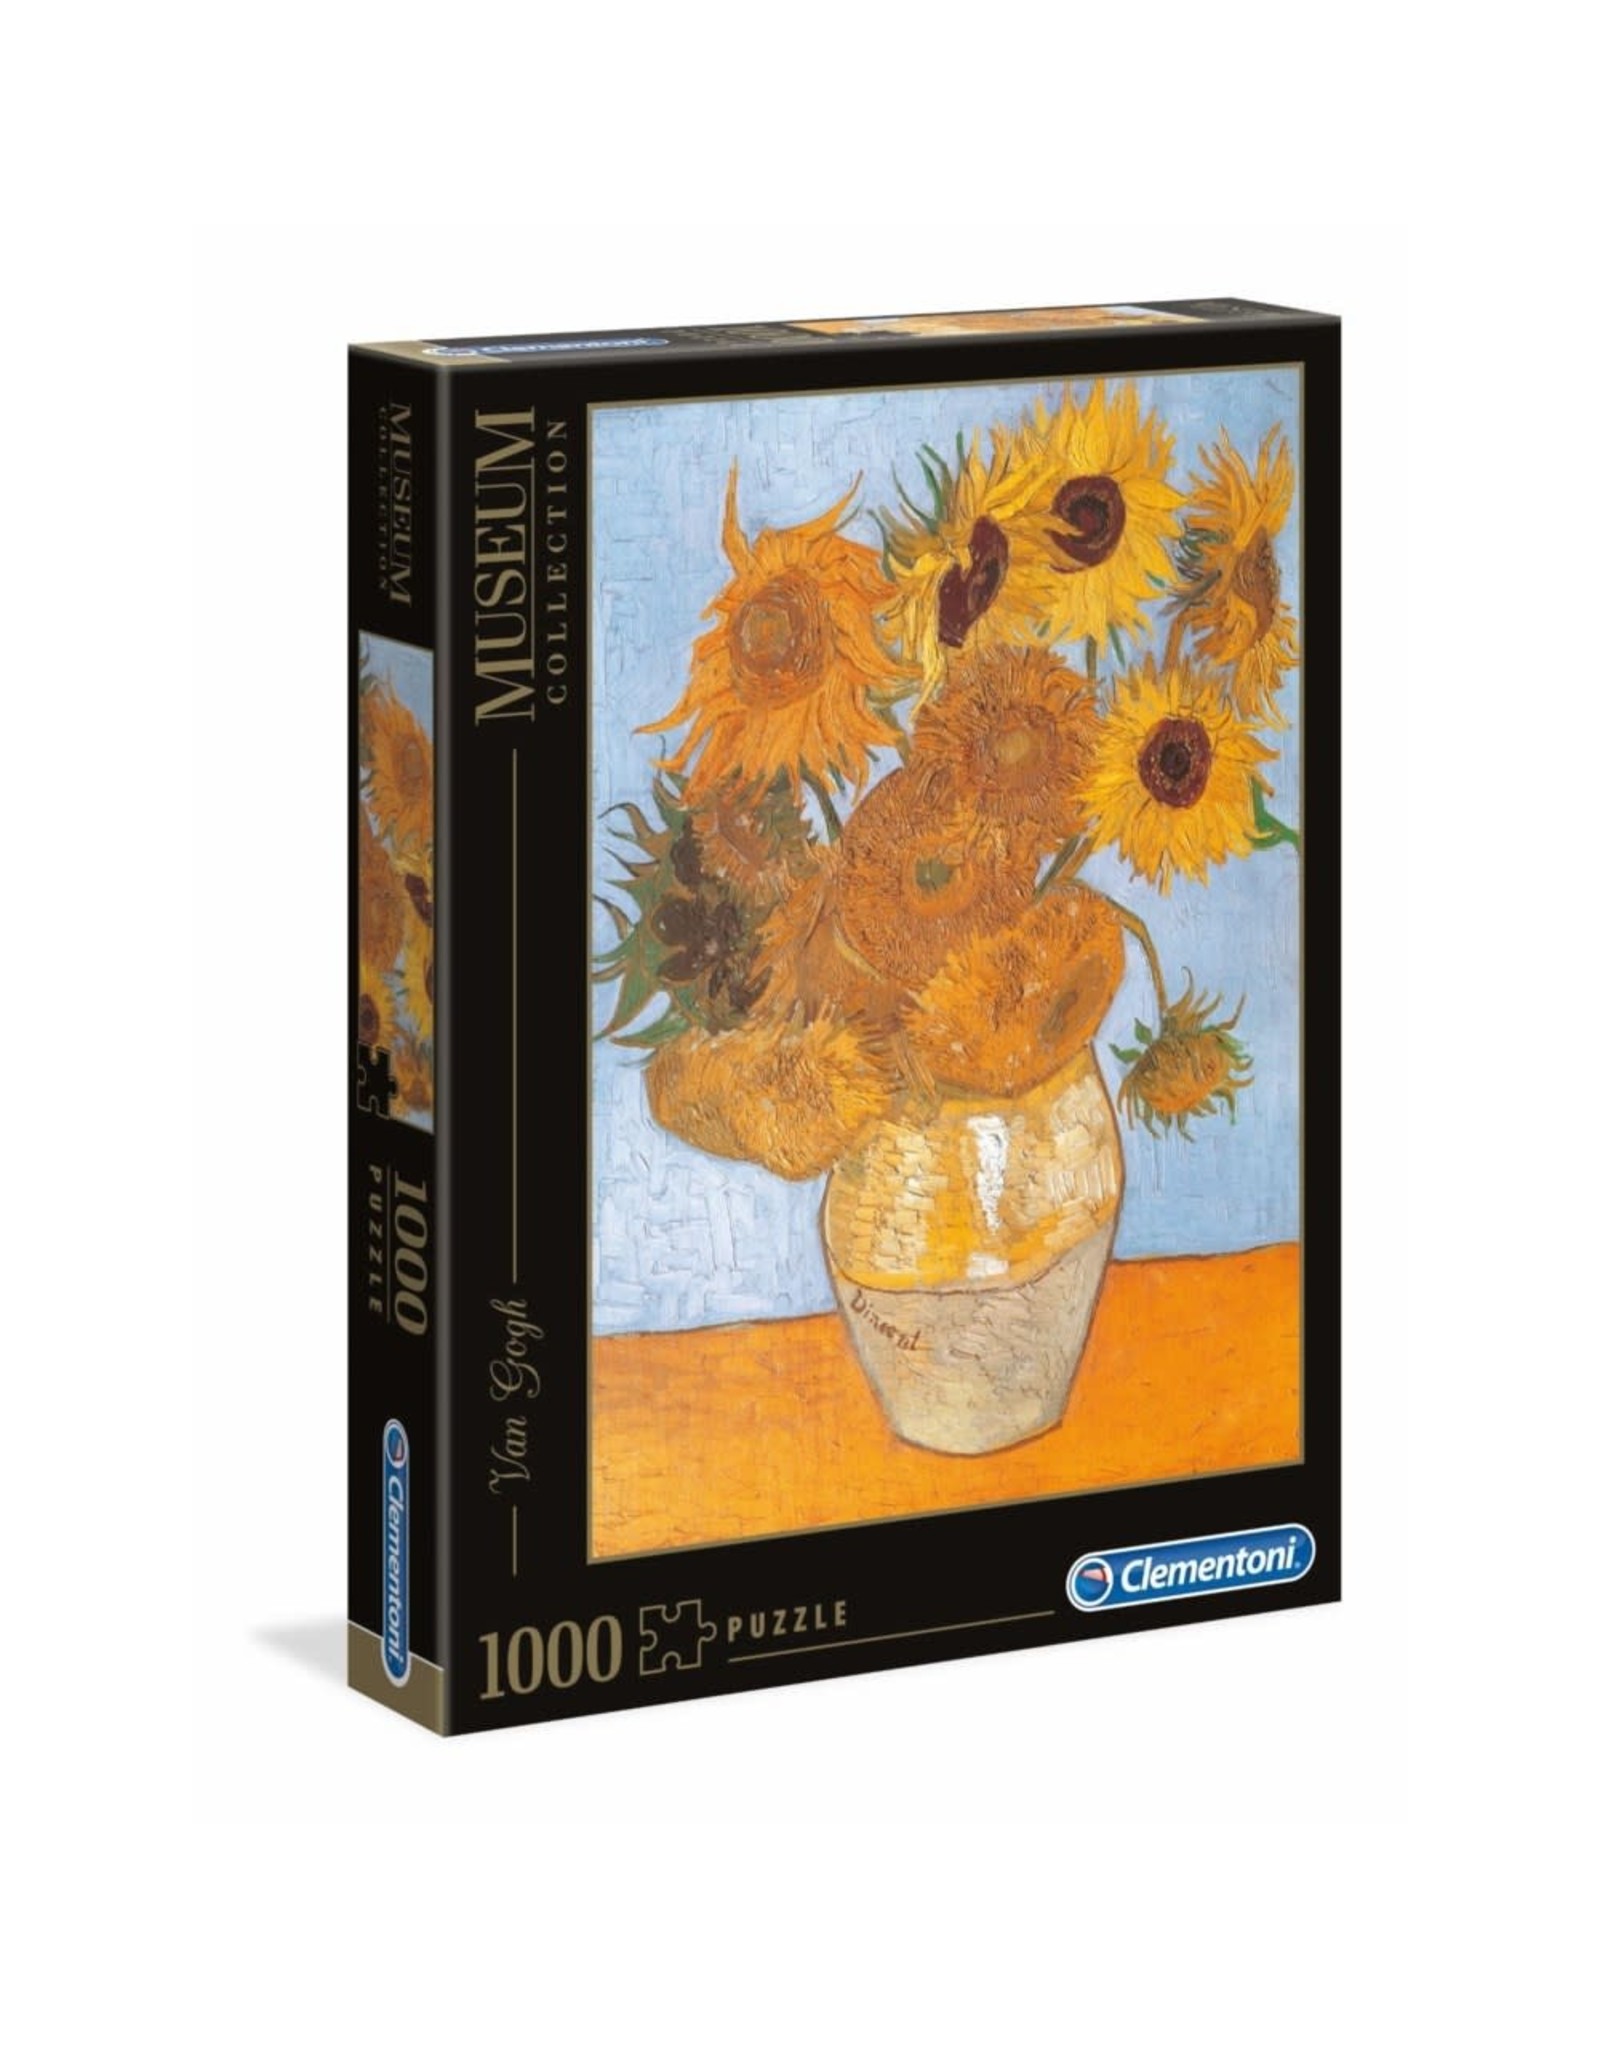 Clementoni 1000pc Museum Van Gogh Sun Flowers Puzzle